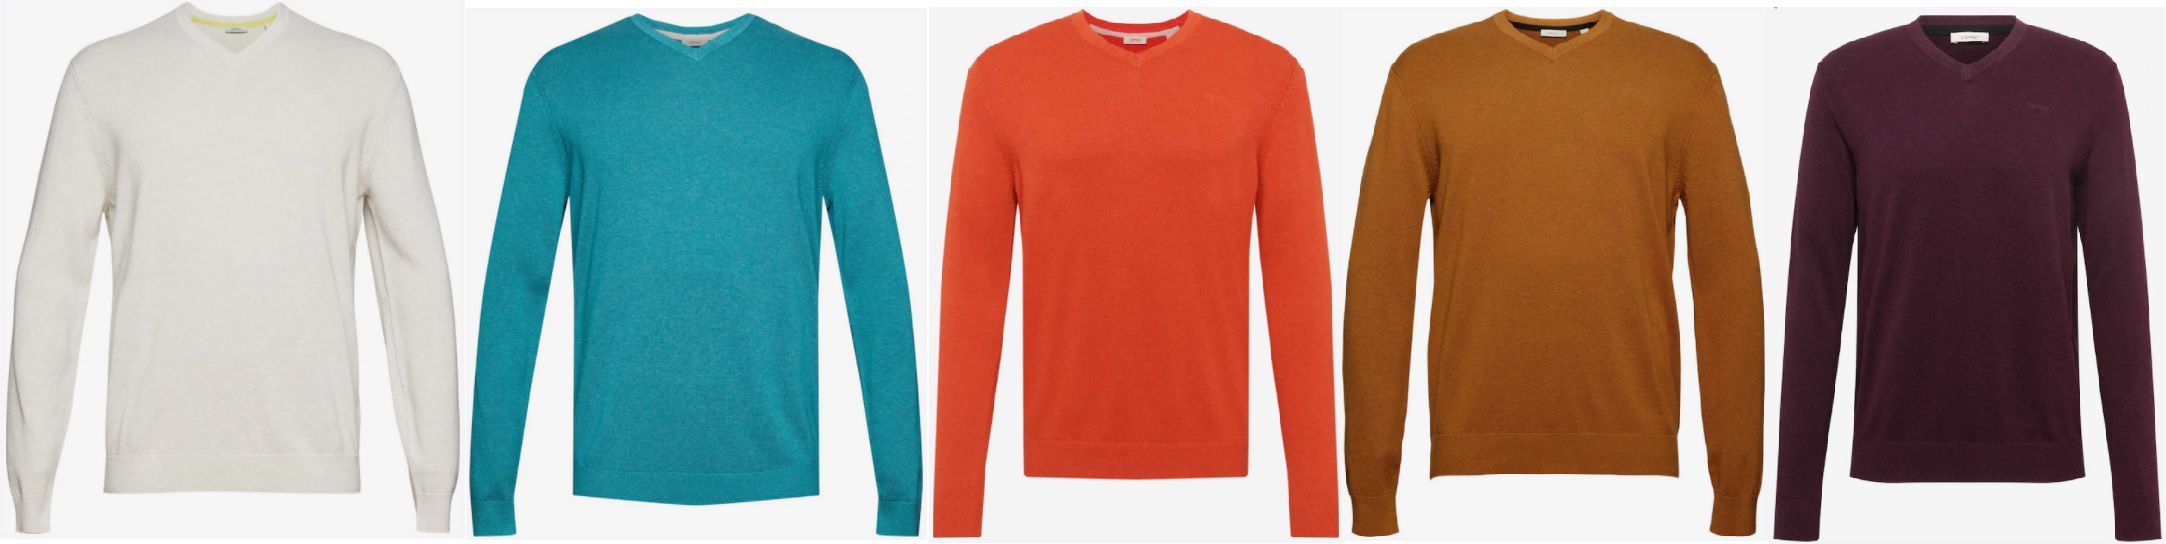 Esprit Pullover aus 100% Baumwolle in unterschiedlichen Farben ab 32,49€ (statt 50€)